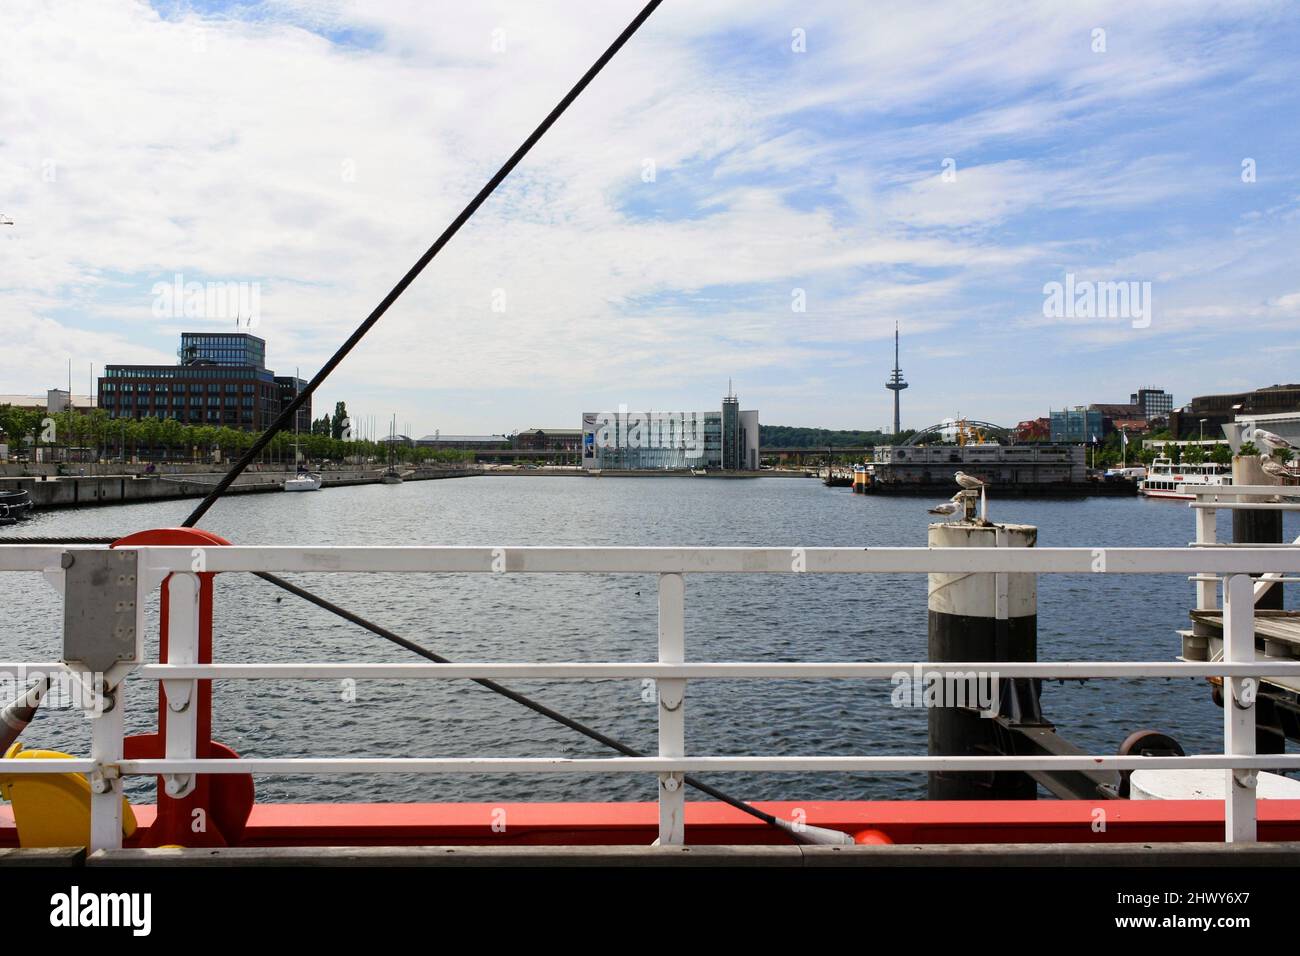 Kiel, Deutschland - Jul 2010: Stadtansicht von der Hörn-Brücke am Hafen im Sommer mit Turm und Wolken im blauen Himmel Hintergrund. Keine Personen. Stockfoto